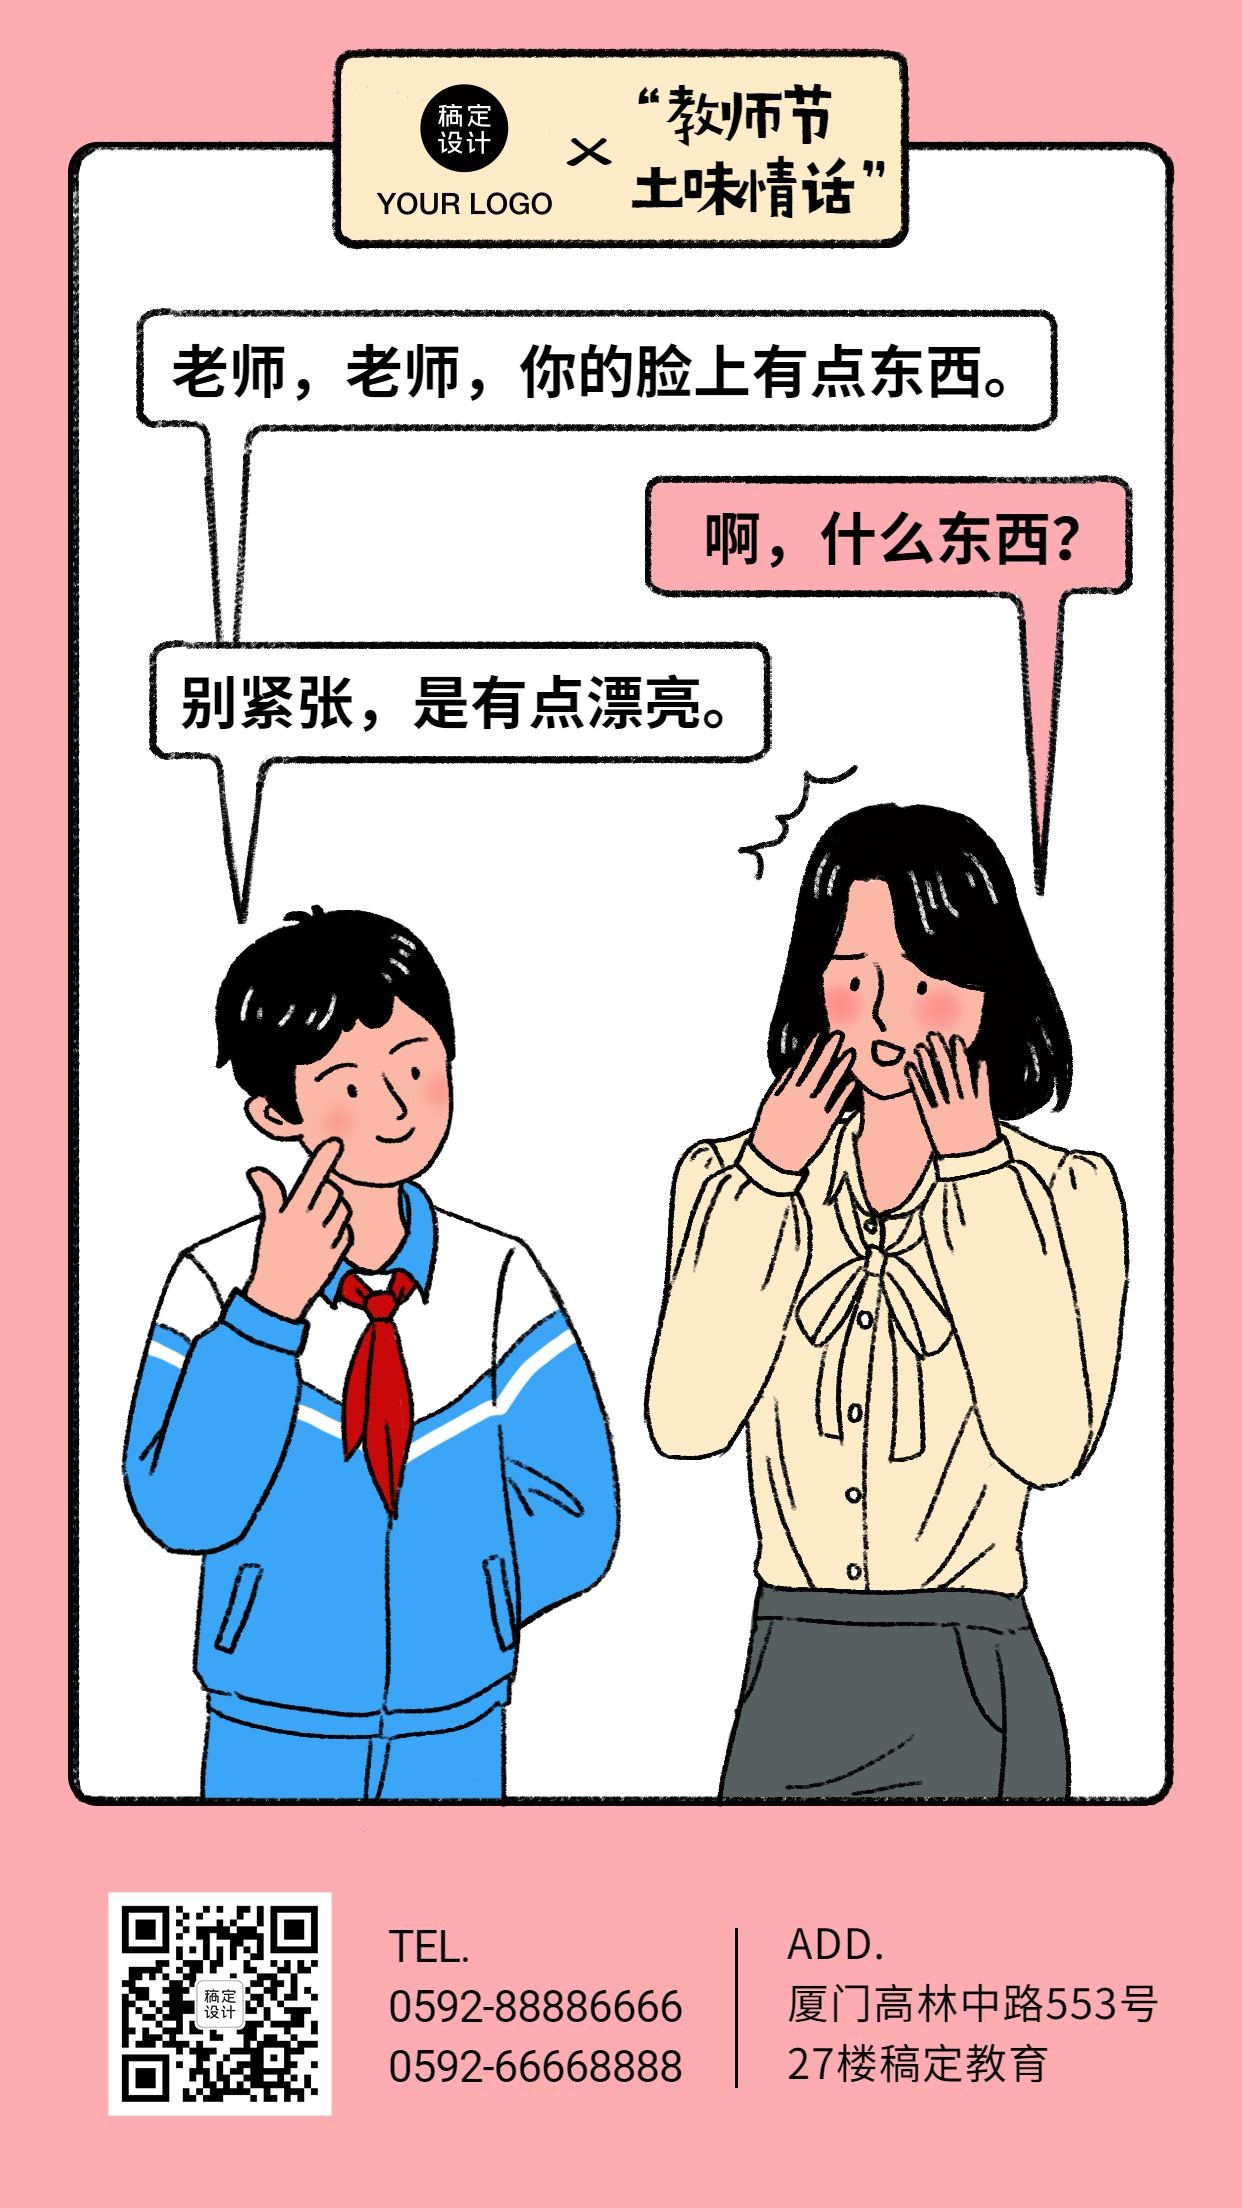 教师节土味情话漫画系列手机海报预览效果